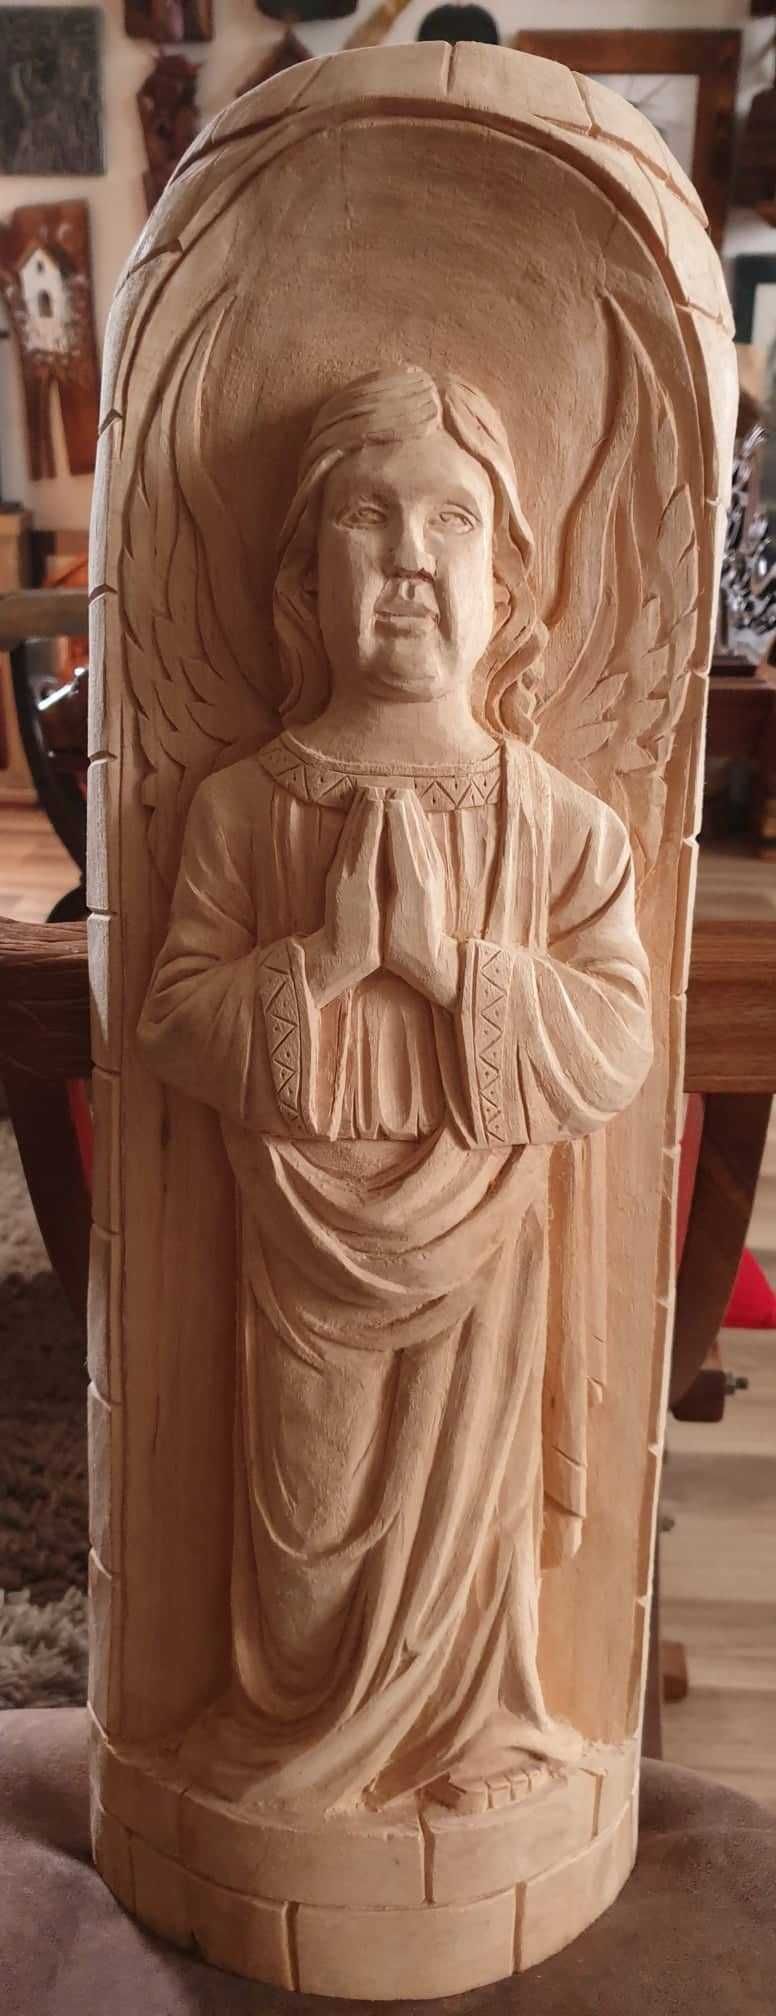 Anioł Srtóż rzeźba płaskorzeźba drewno nowy prezent